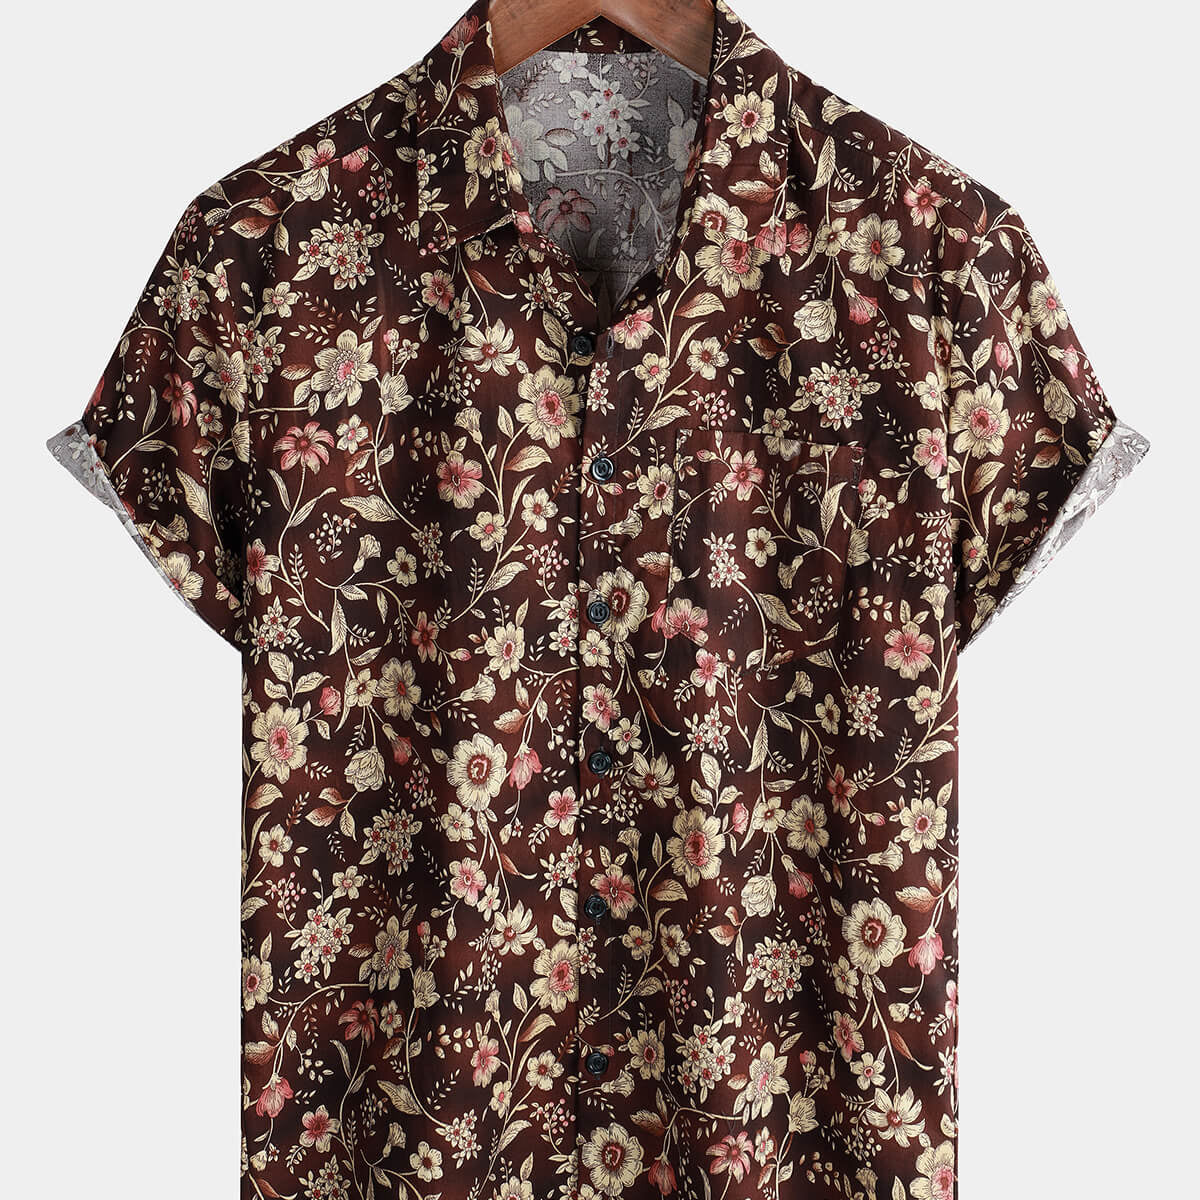 Men's Retro Short Sleeve Button Up Brown Summer Shirt